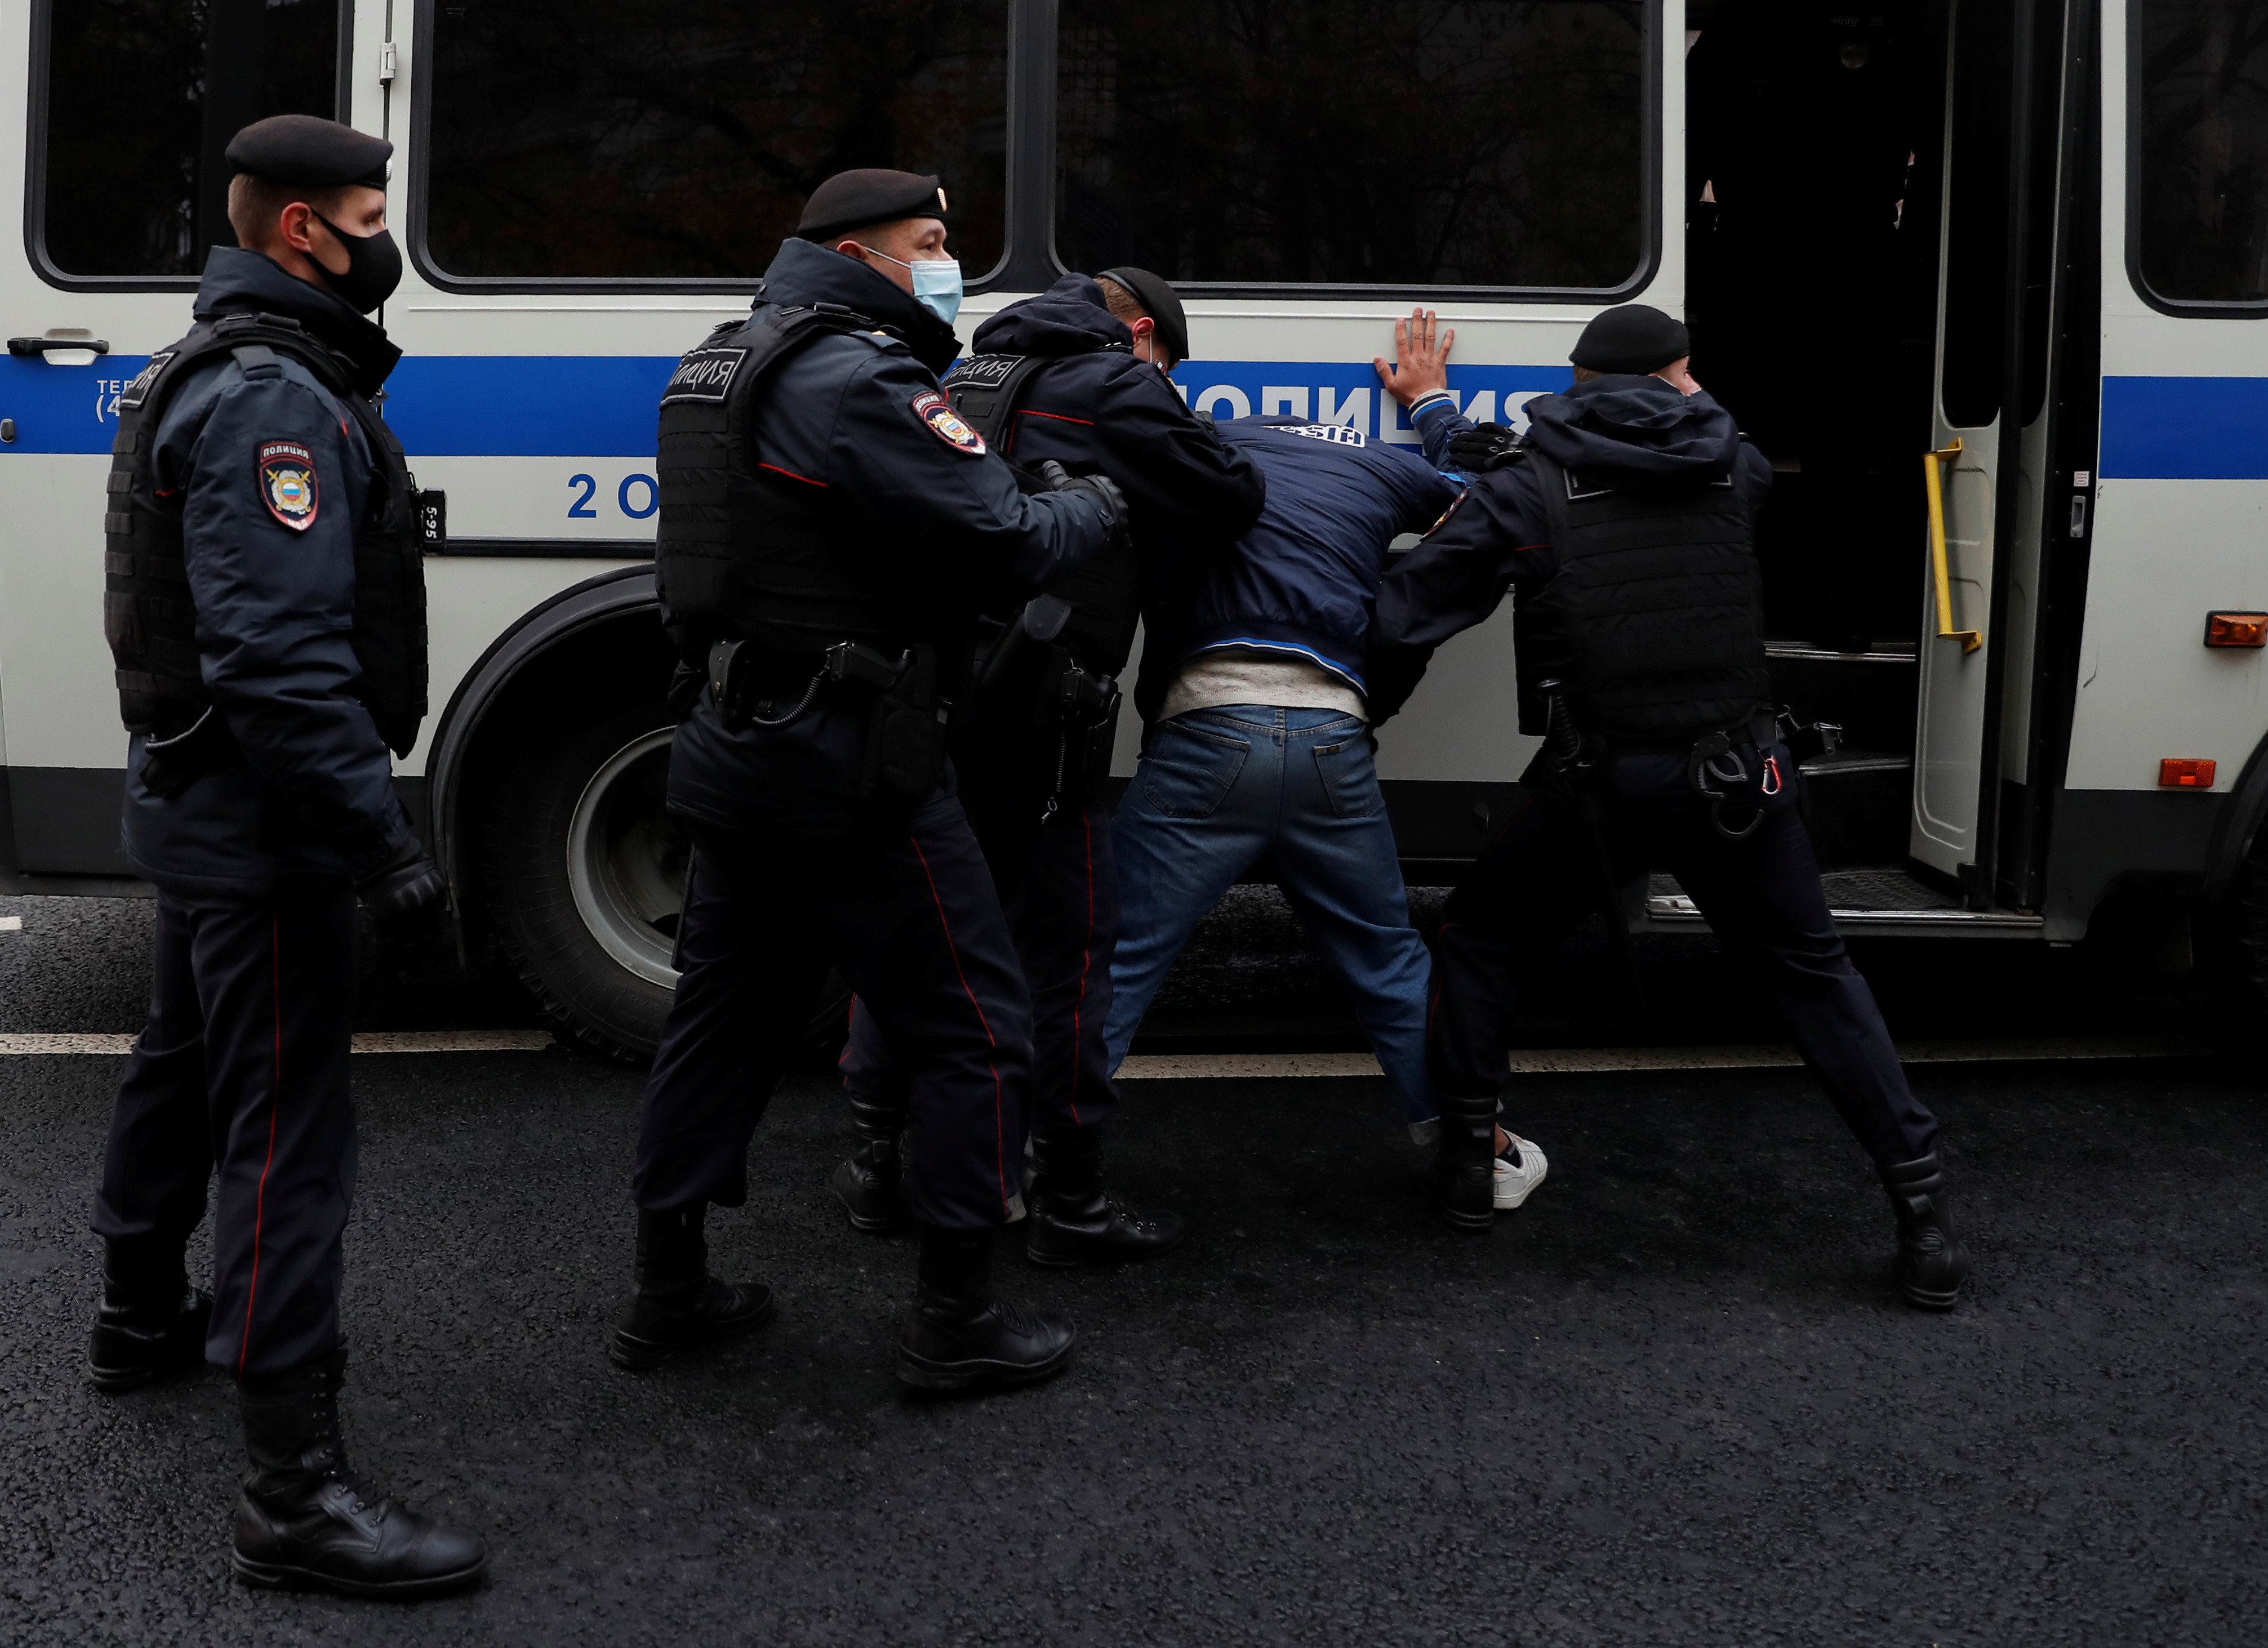 Agentes de la ley rusos detienen a un manifestante durante una protesta en Moscú el 30 de octubre de 2020. REUTERS/Evgenia Novozhenina